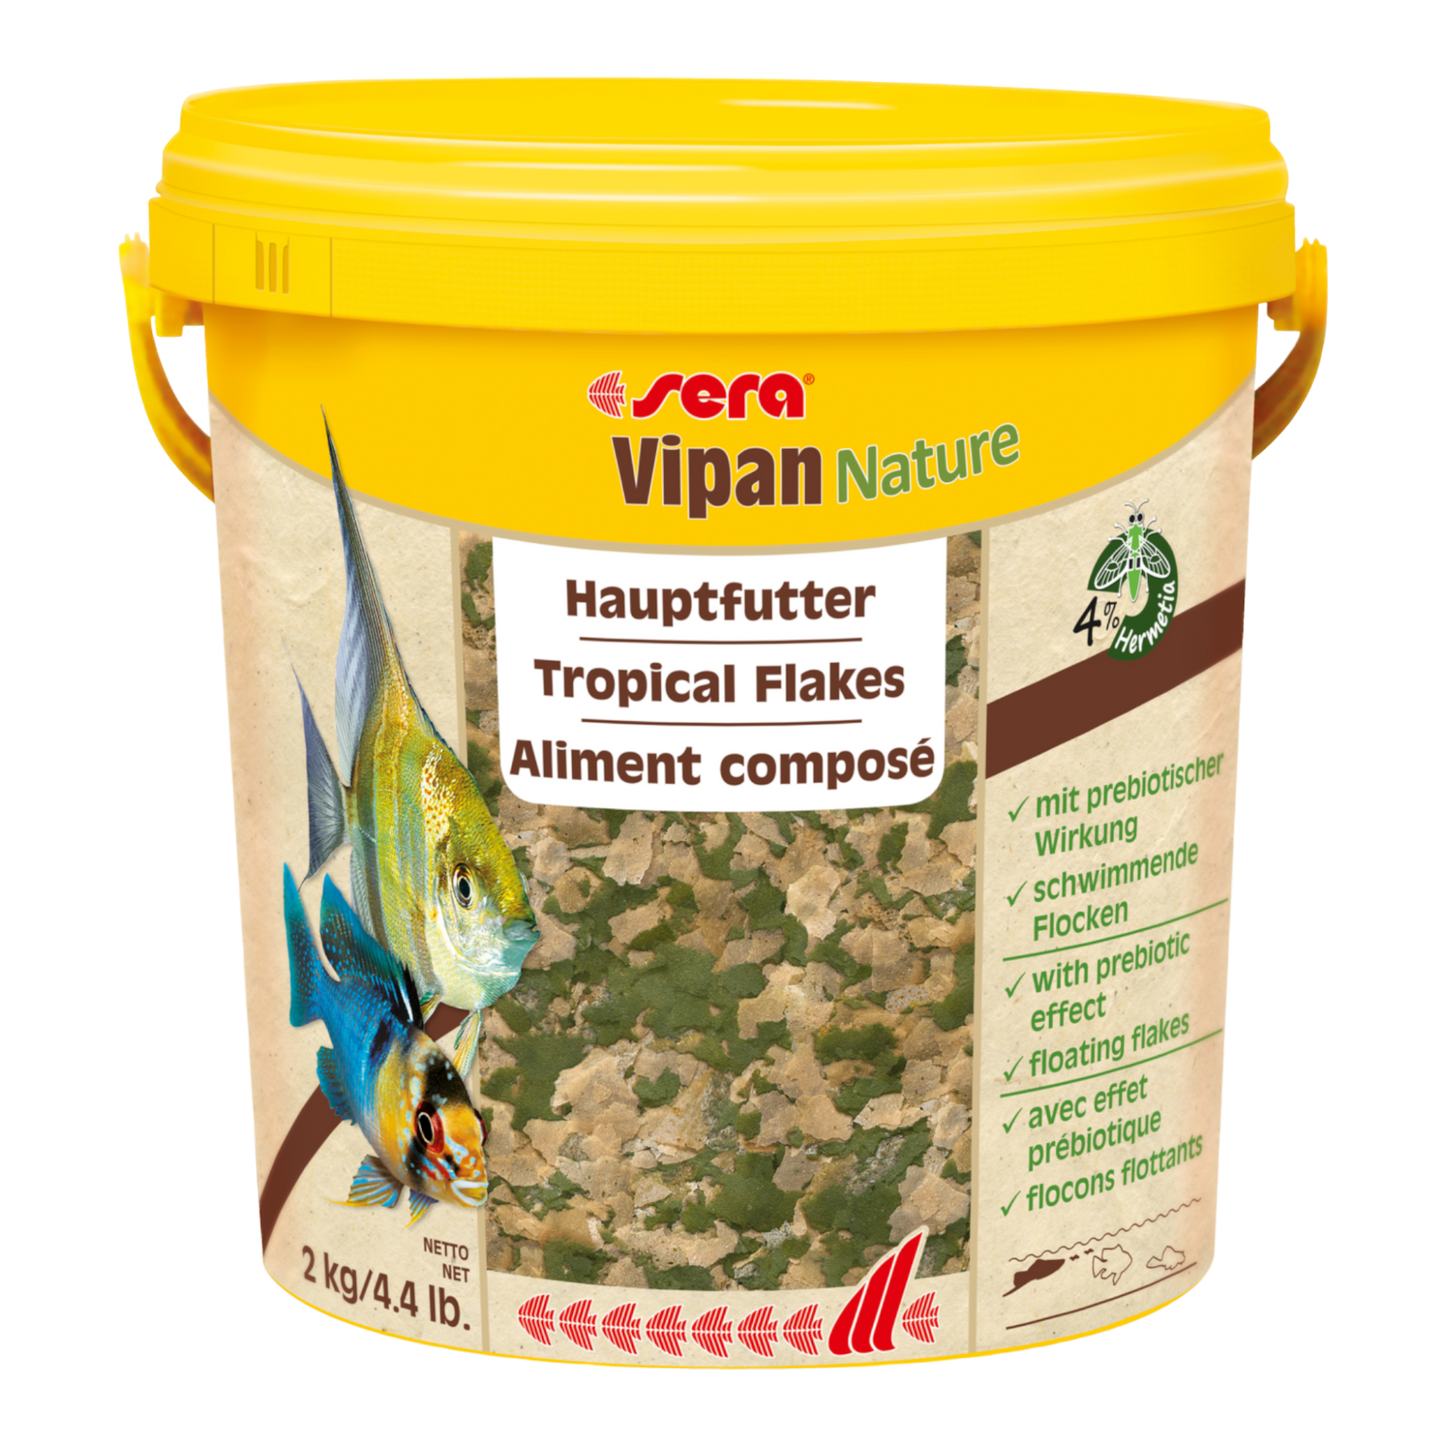  sera Vipan Nature ist das Hauptfutter aus schwimmenden Flocken ohne Farb- und Konservierungsstoffe für alle an der Wasseroberfläche fressenden Zierfische. Mit Insektenmehl enthält es eine hochwertige Proteinquelle, die zusätzlich ressourcenschonend ist. 